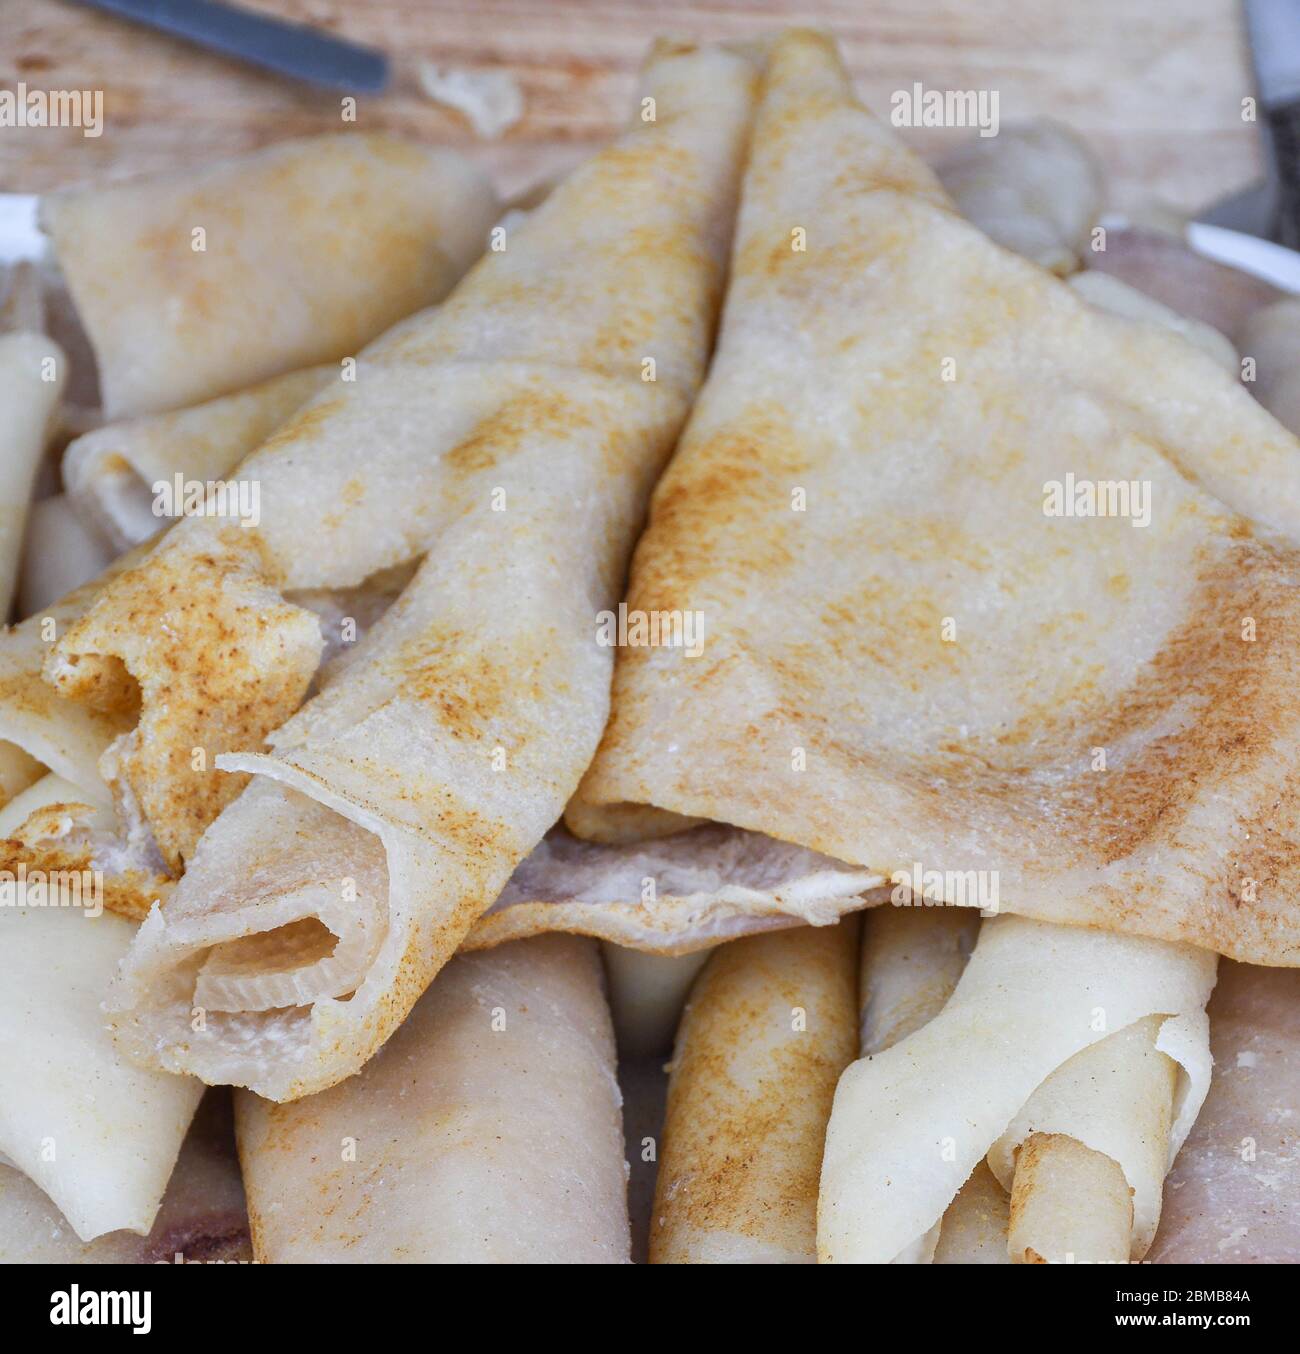 Sorici tradizionali rumeni, pelle di maiale in vendita durante il festival alimentare, pile sul bancone Foto Stock